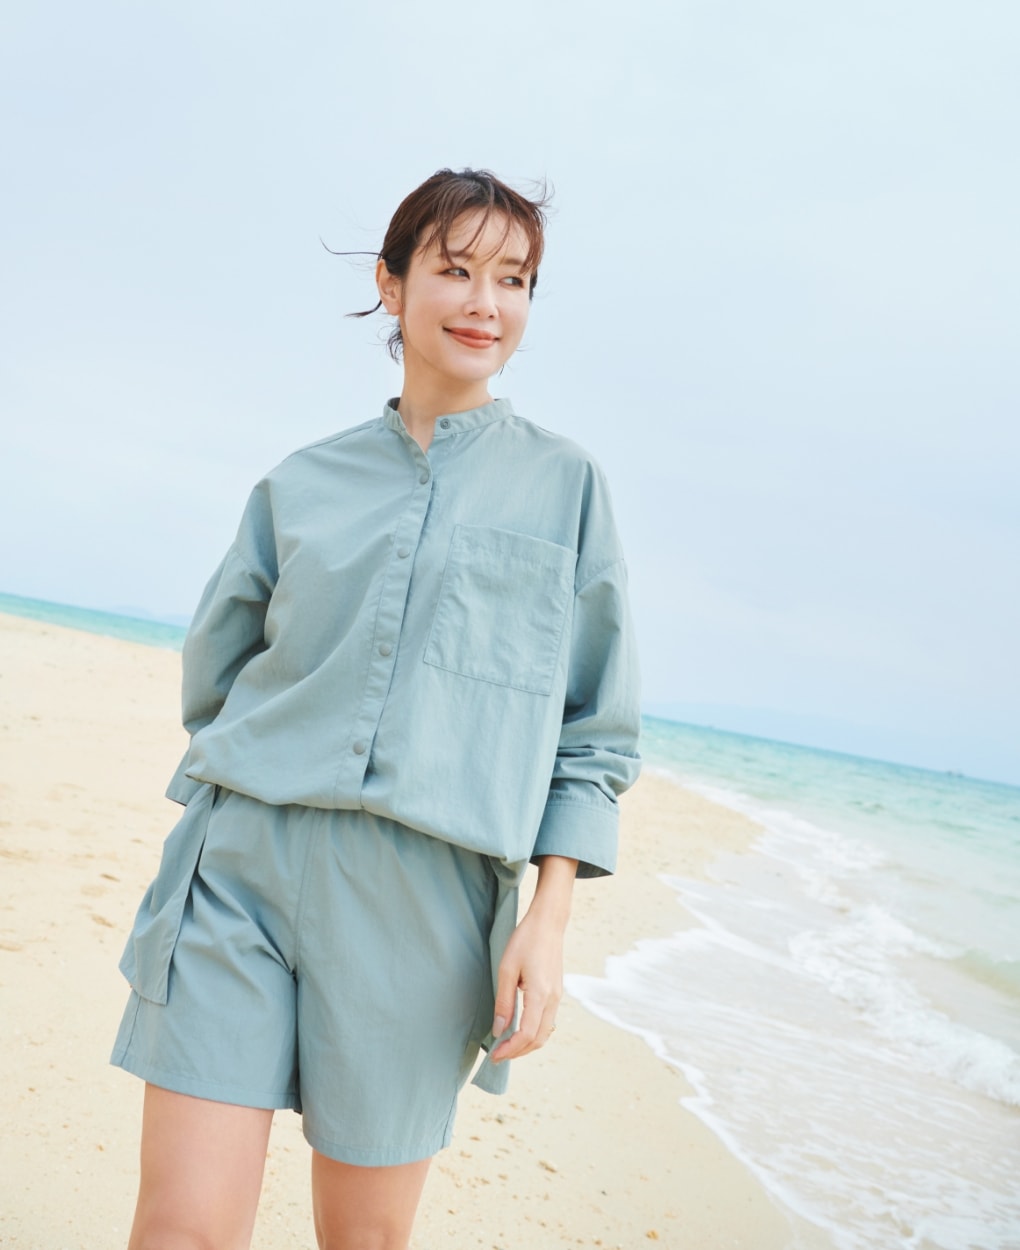 ラッシュガードショートパンツとラッシュガードシャツを着用した女性が浜辺を歩いている写真